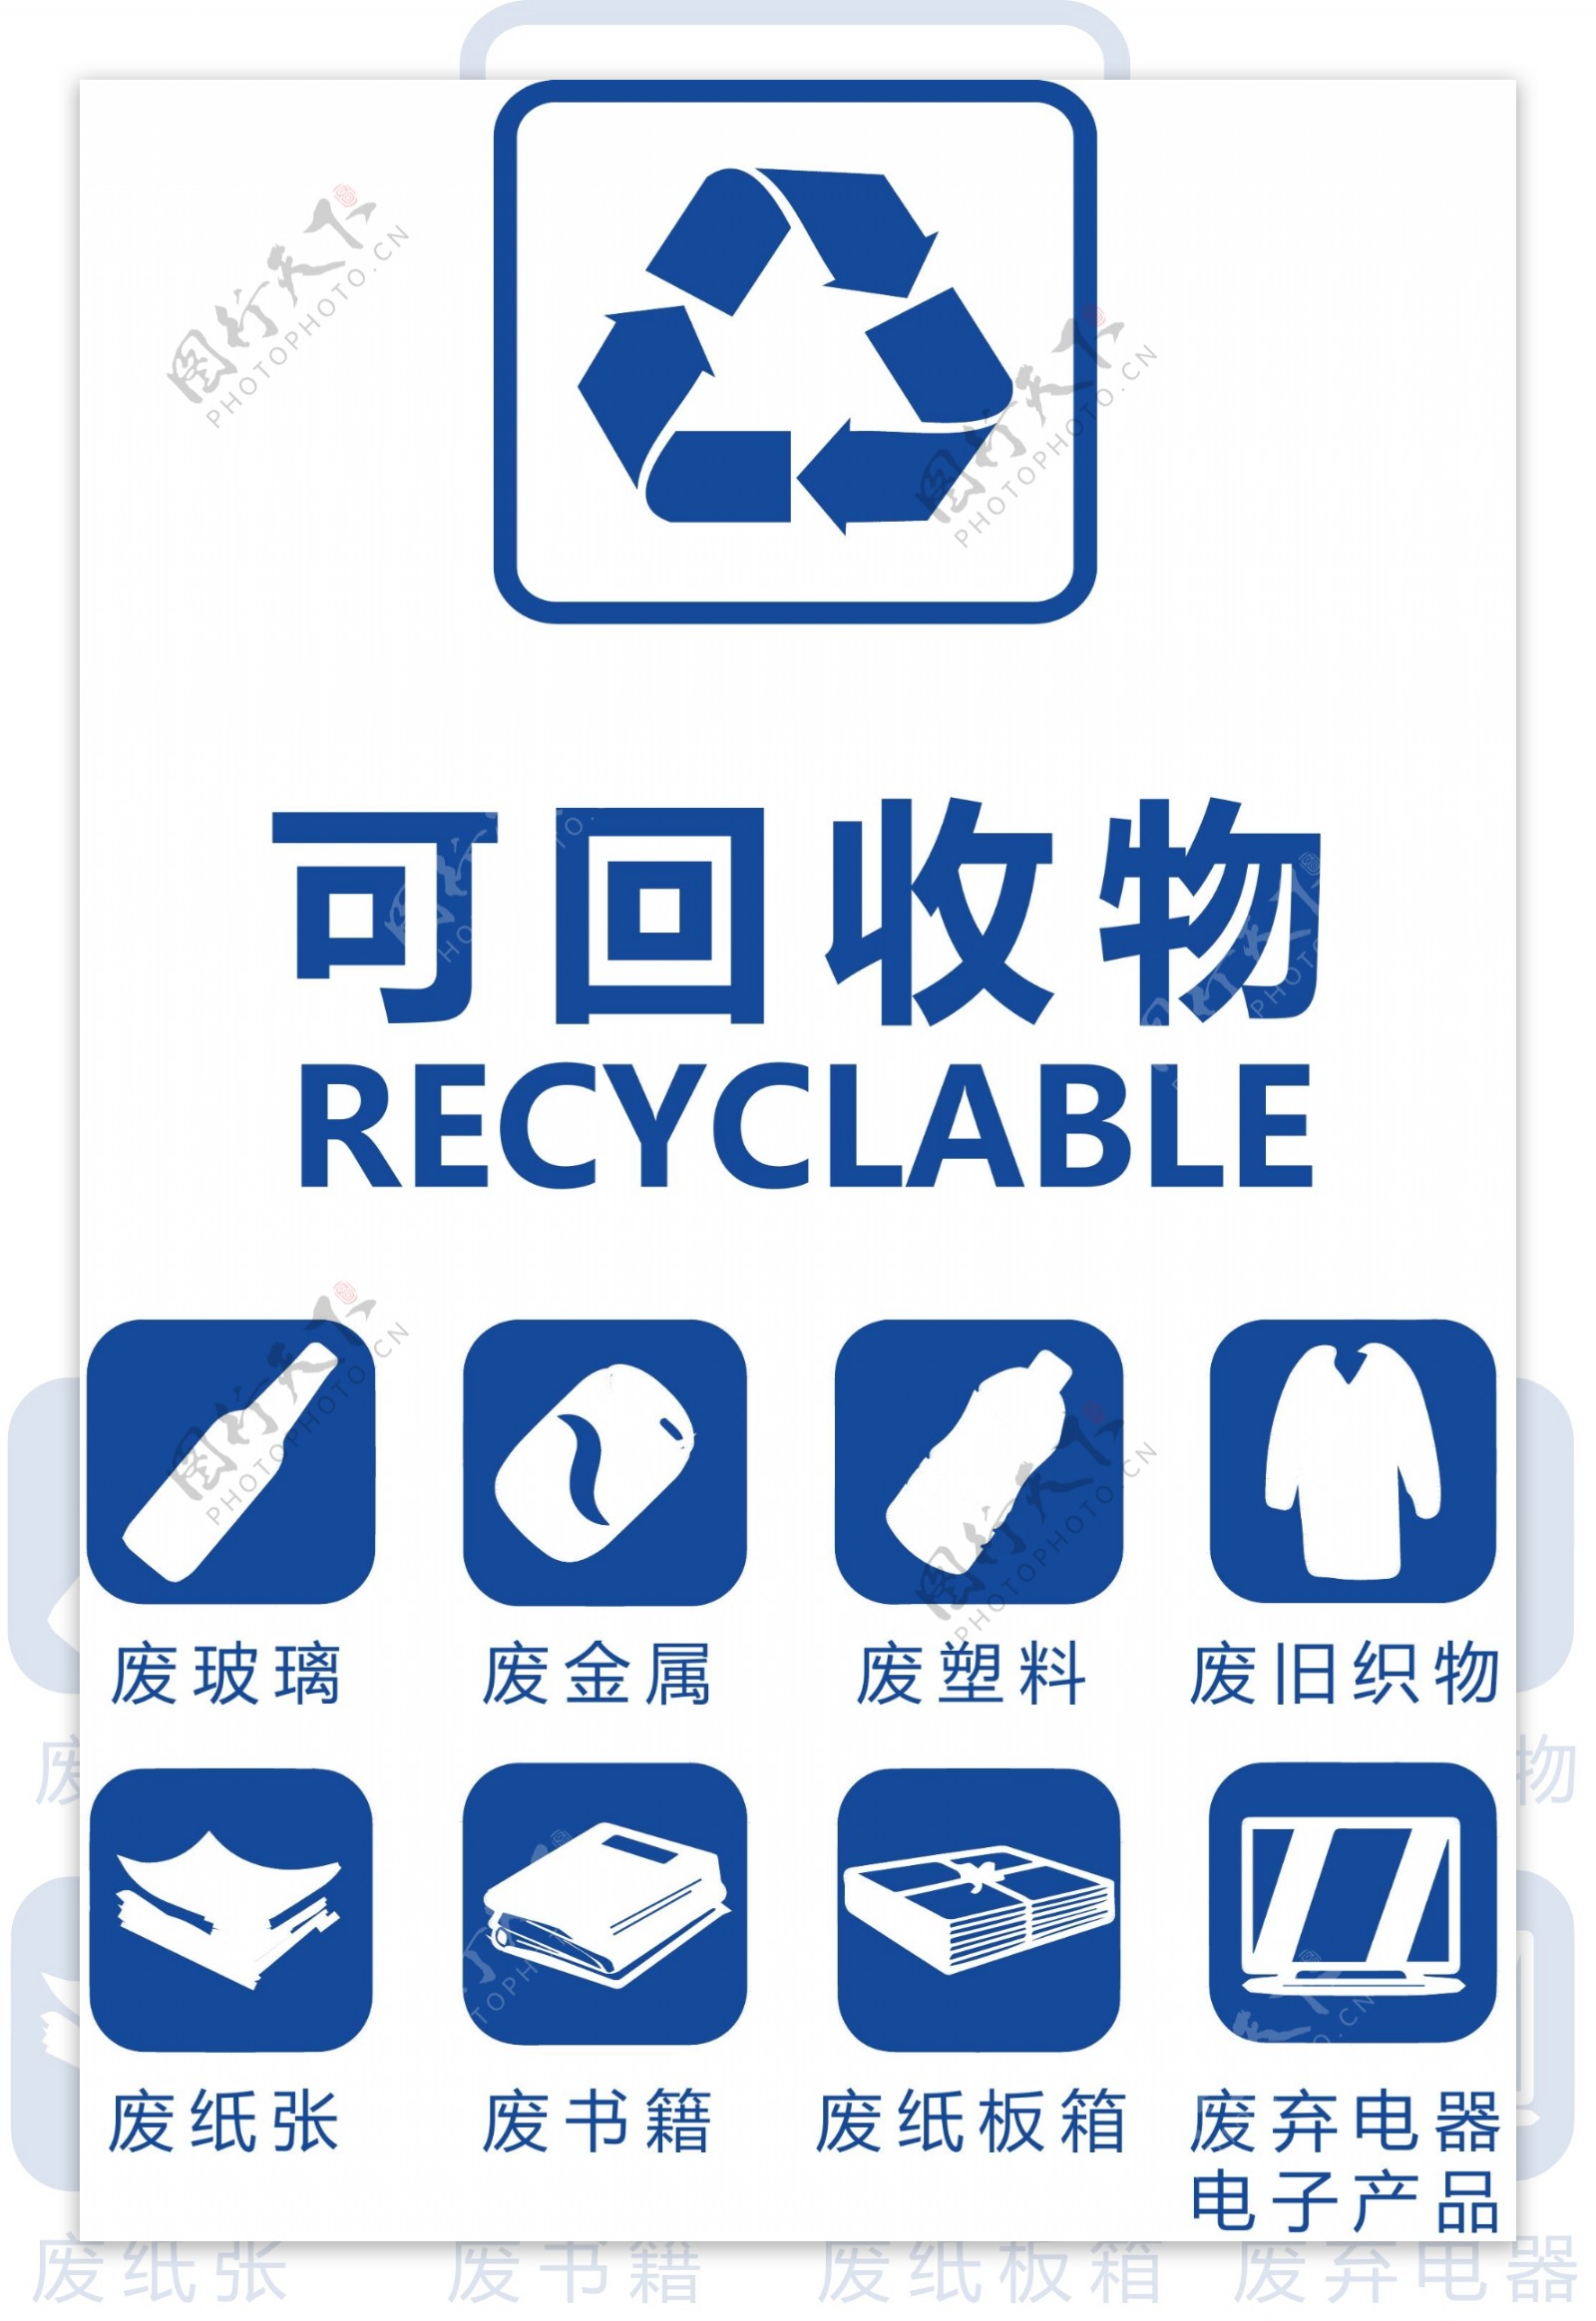 可回收垃圾其垃圾分类指引图